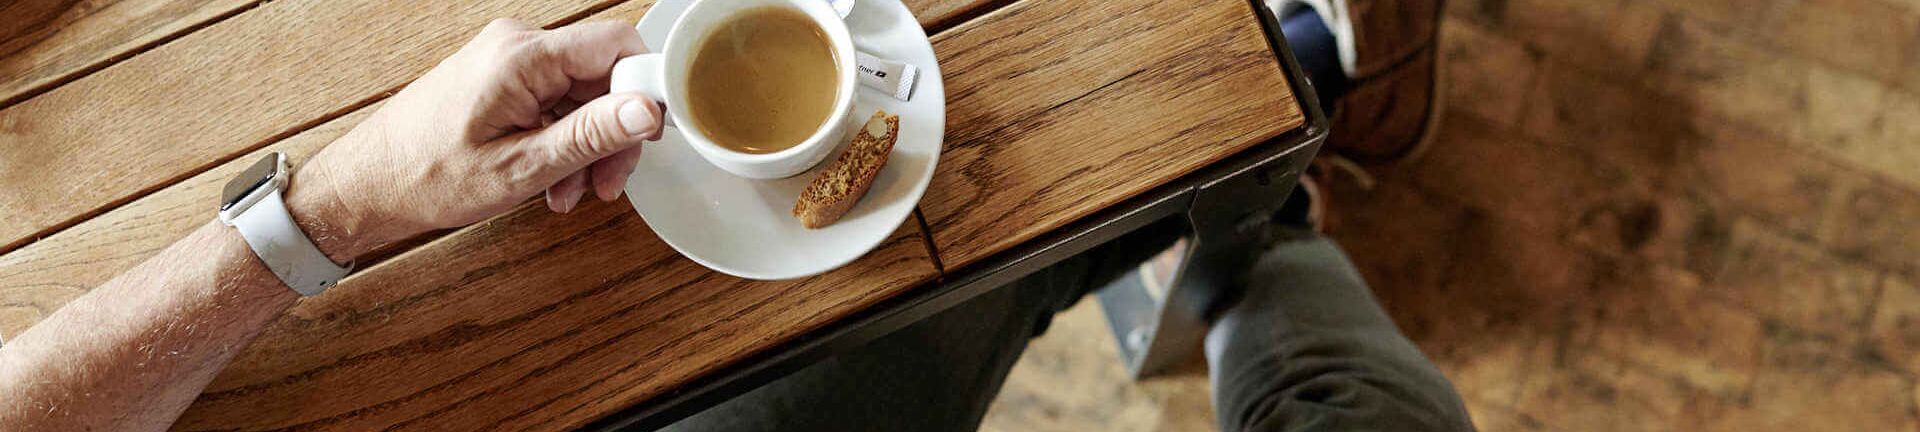 Kaffee Crema im Cafe trinken